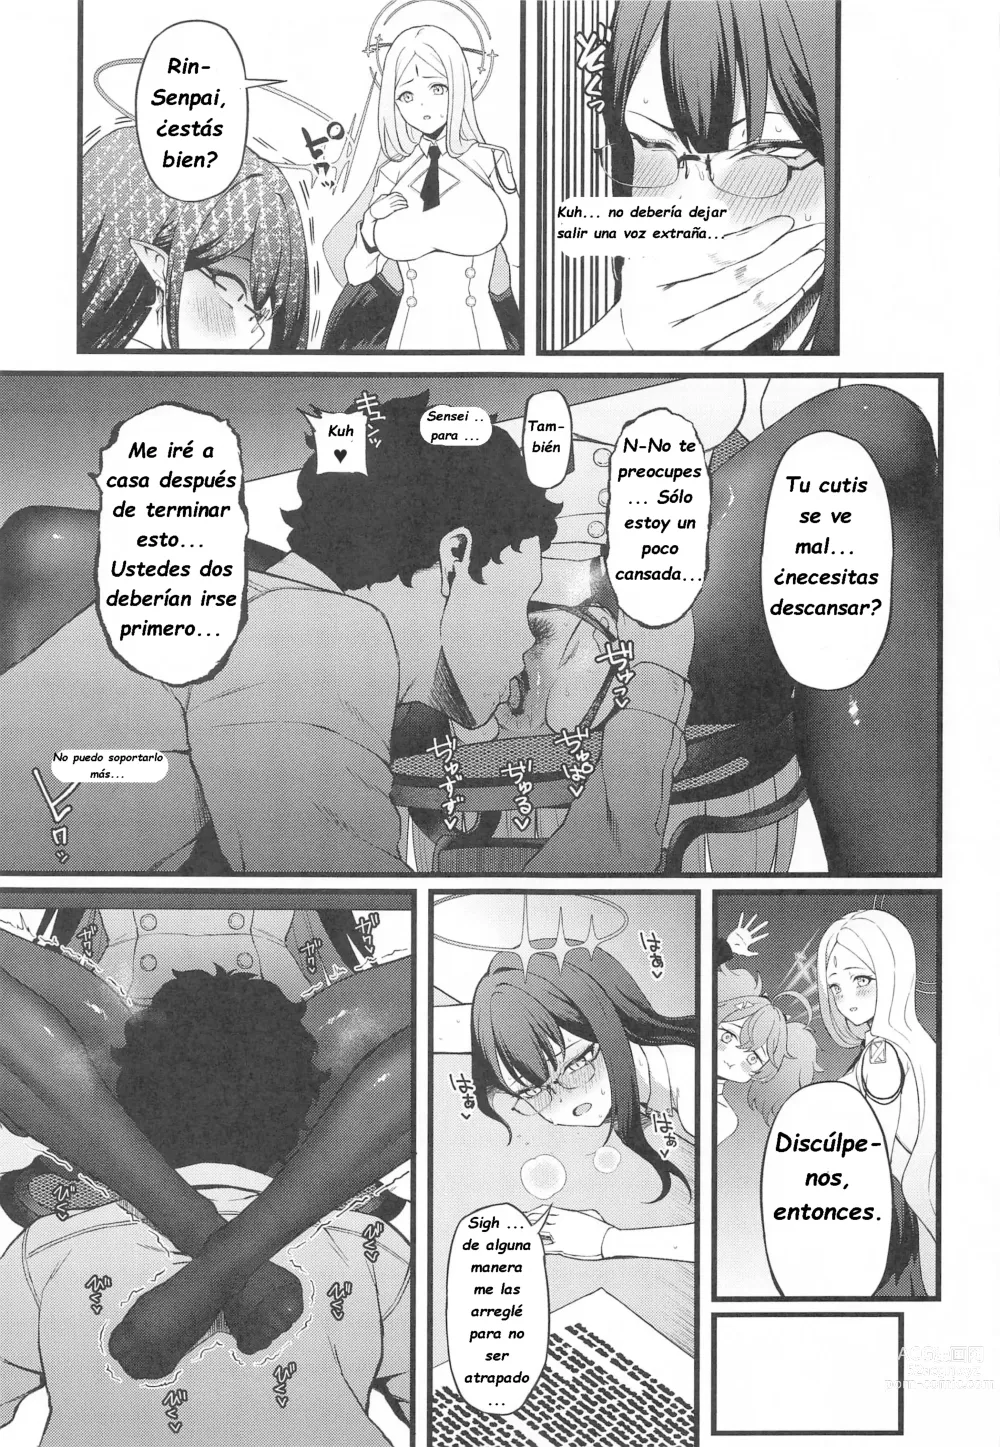 Page 20 of doujinshi Nanagami Rin está en celo